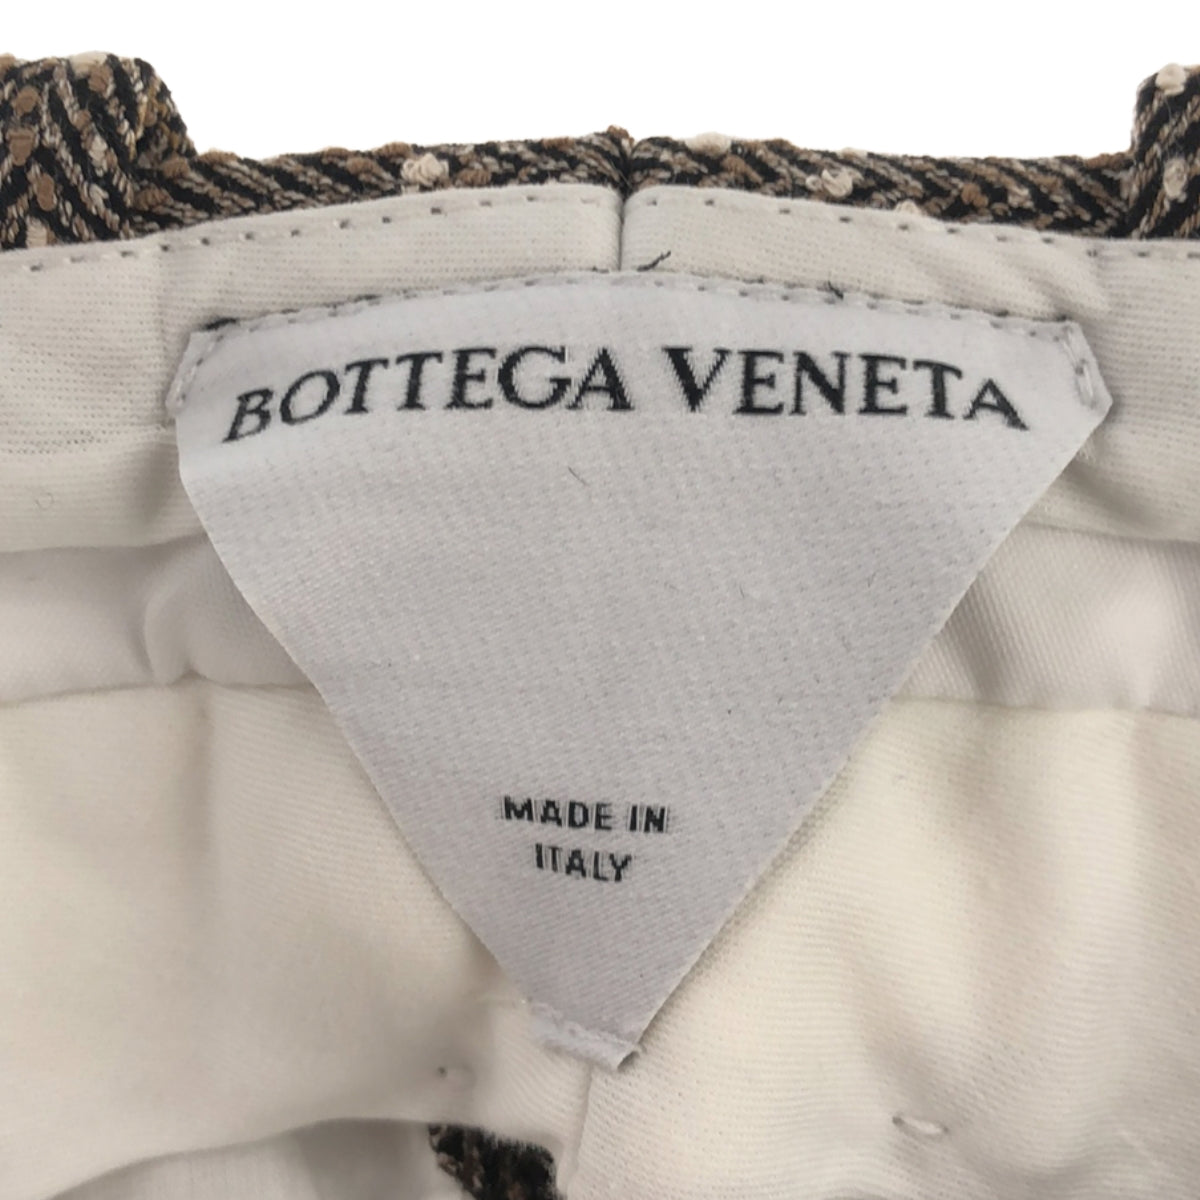 BOTTEGA VENETA / ボッテガヴェネタ | 2021AW | シルク混 ヘリンボーン スラックスパンツ | 36 | レディース – KLD